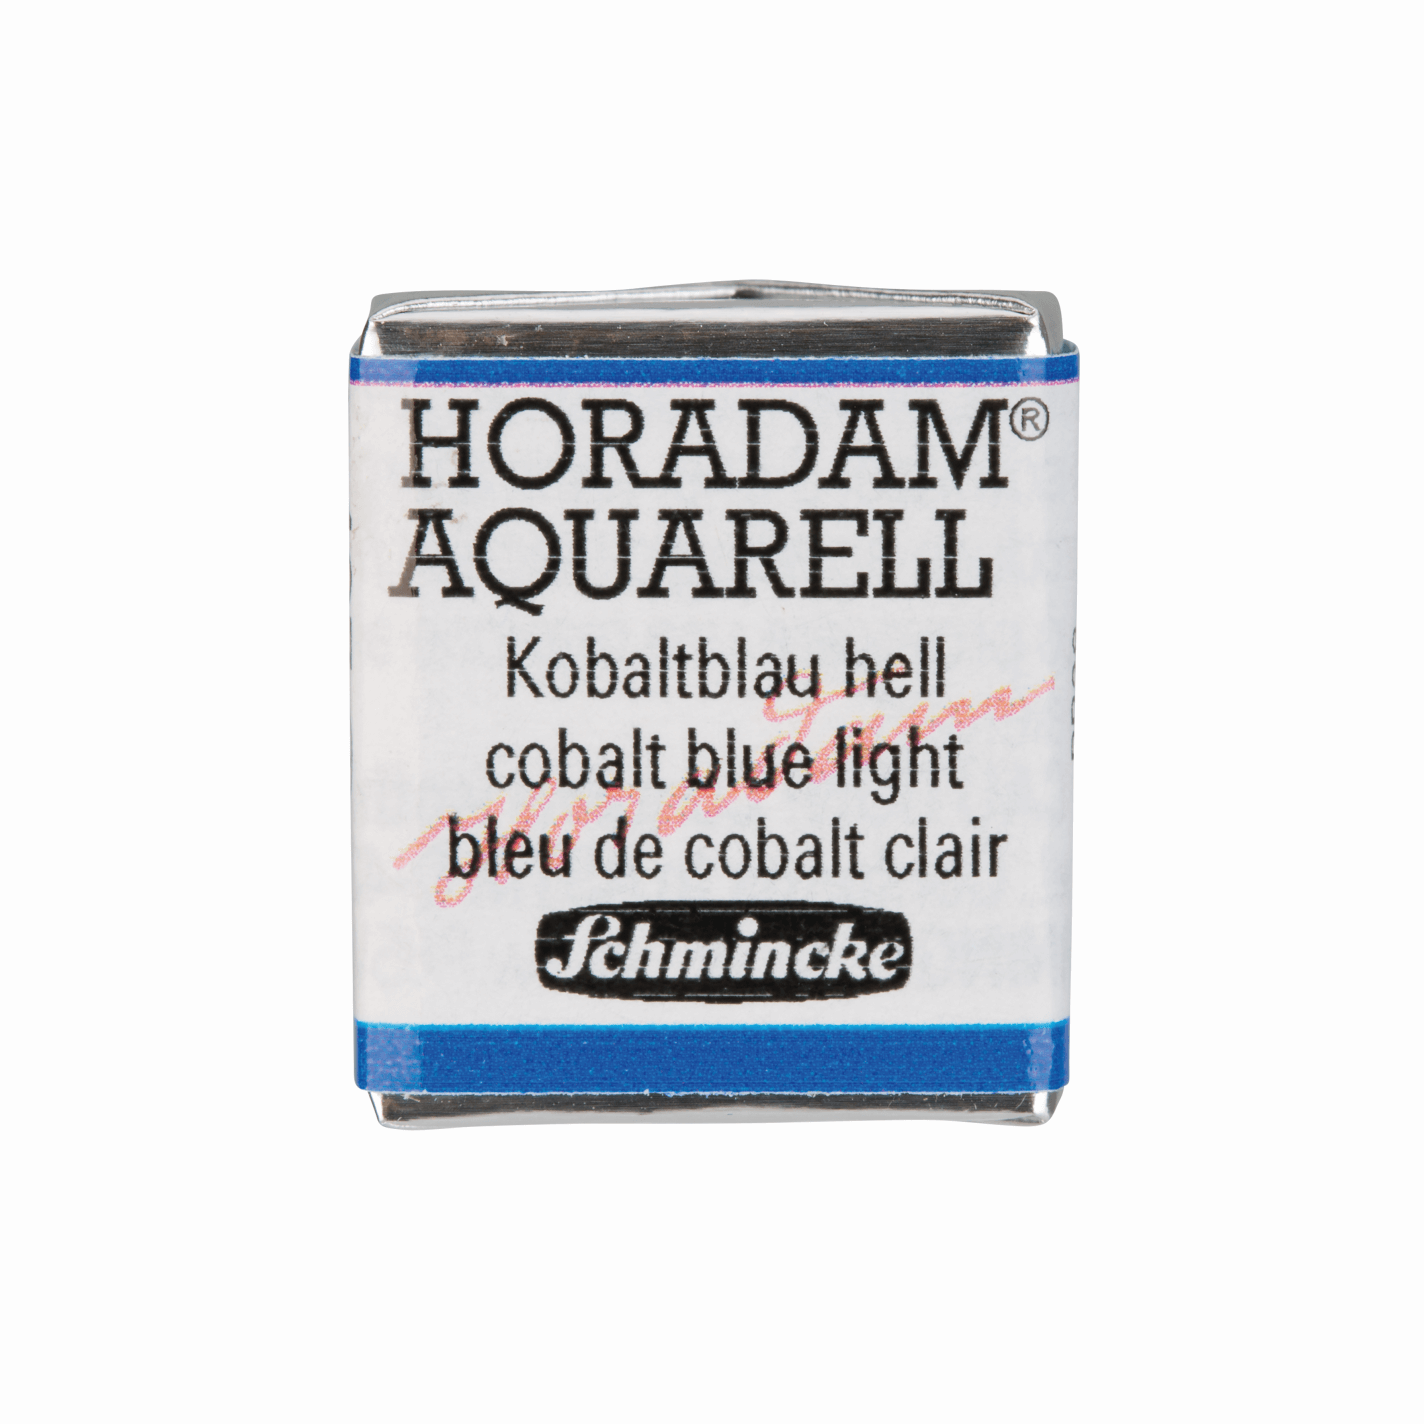 Schmincke Horadam Aquarell pans 1/2 pan Cobalt Blue Light